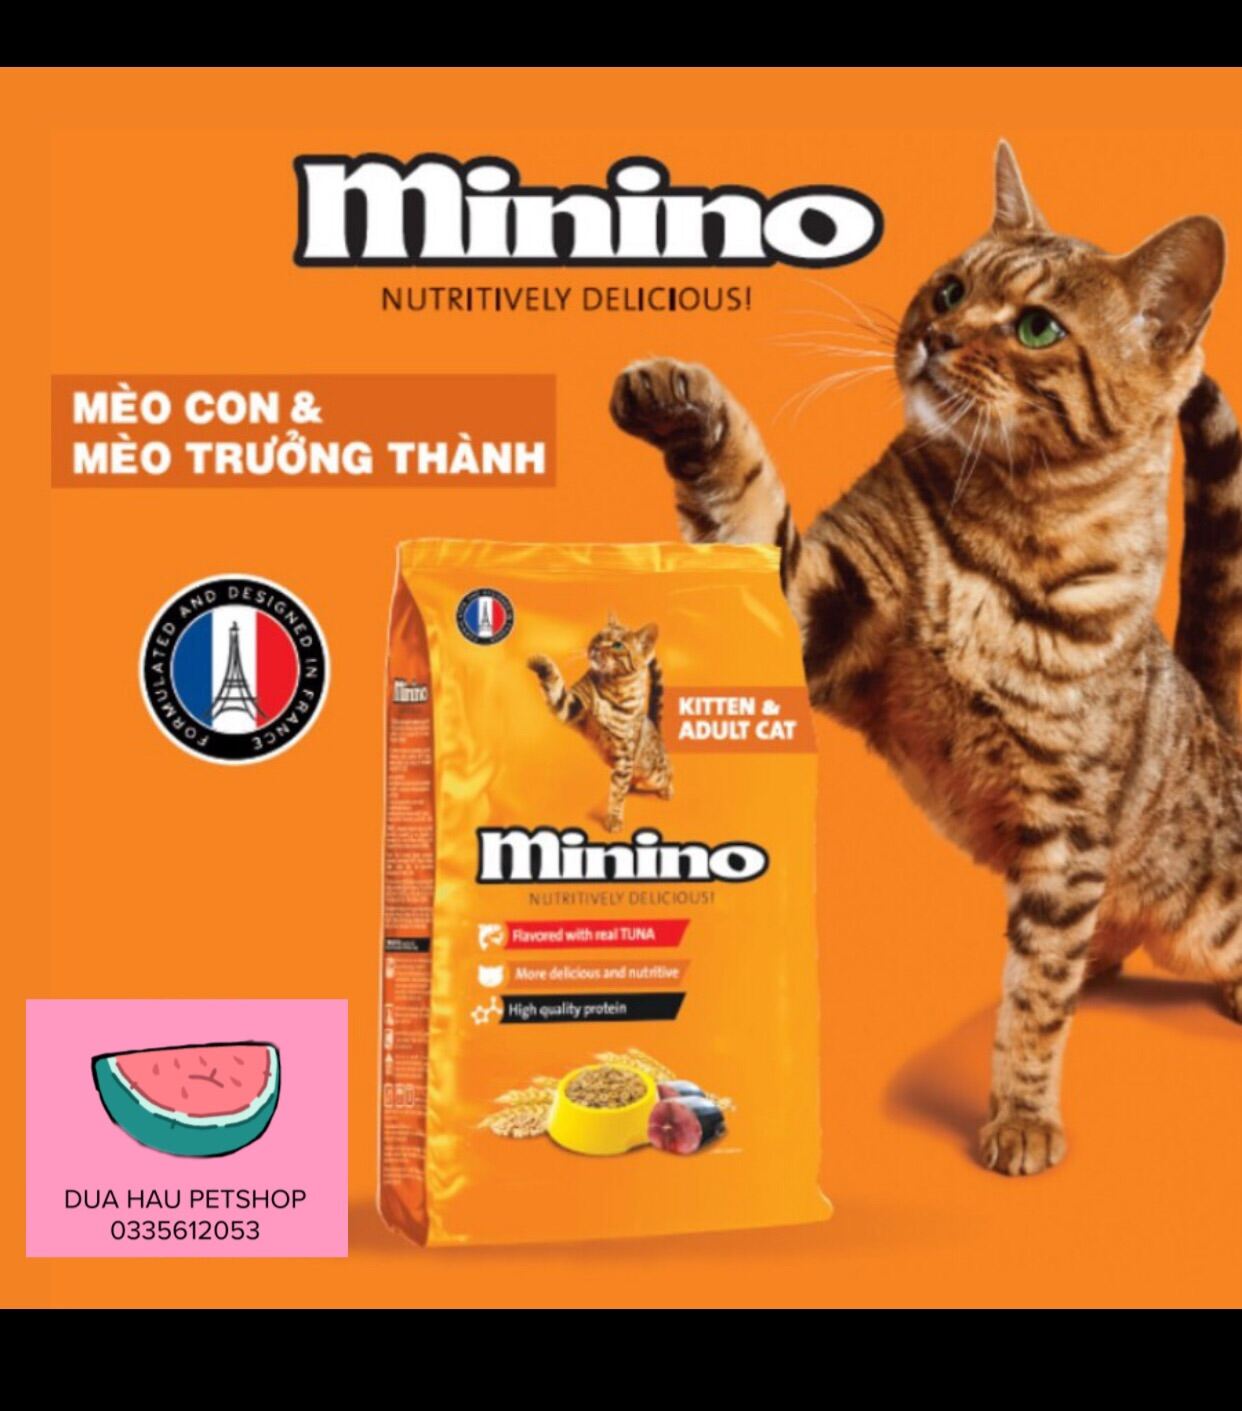 Thức ăn hạt cho mèo mọi lứa tuổi 1.3kg Minino